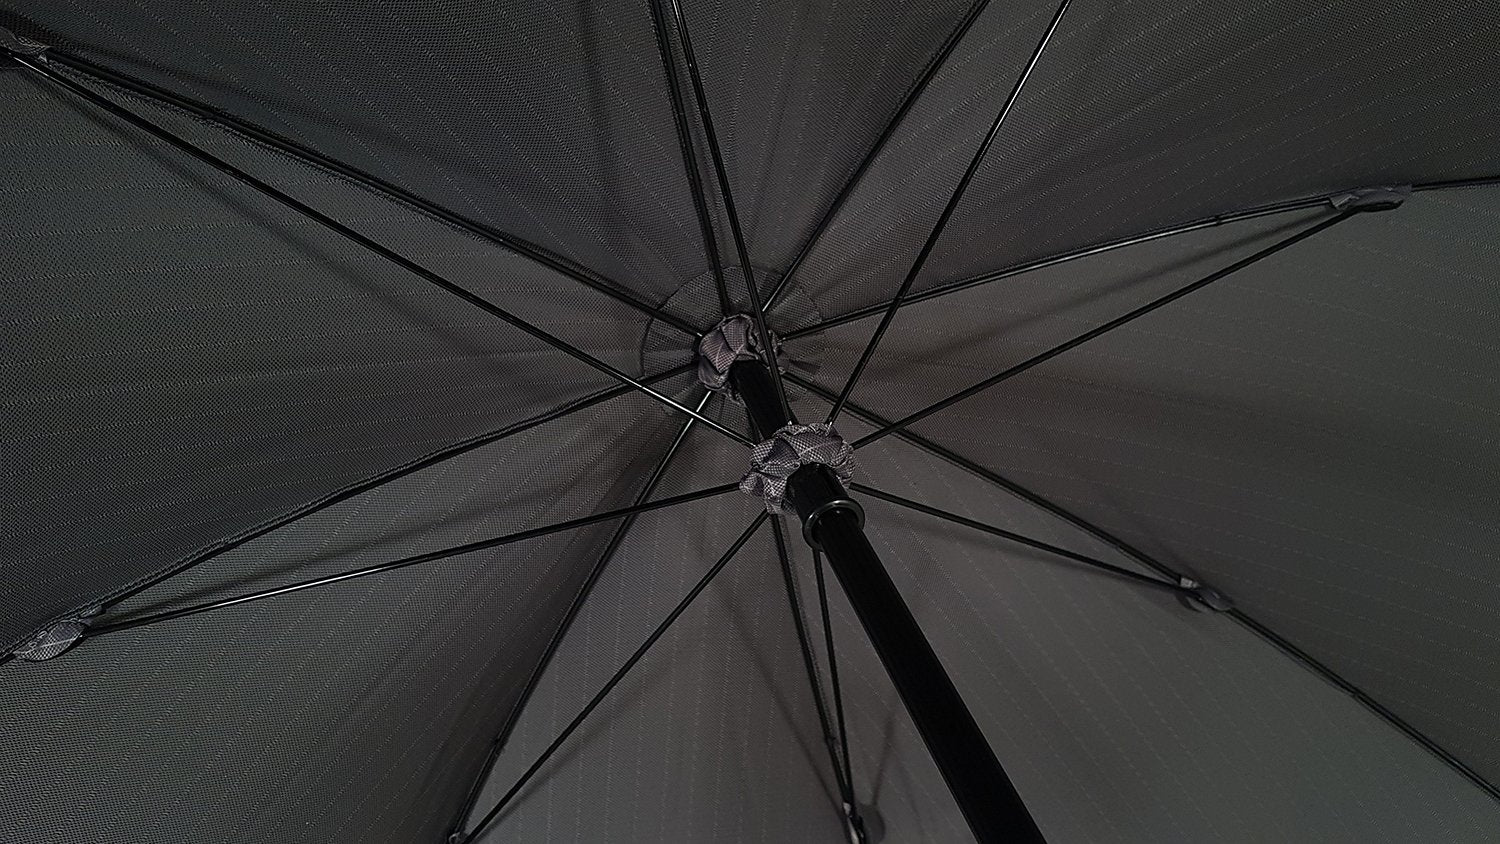 Grey Oversized Men's Umbrella - il-marchesato